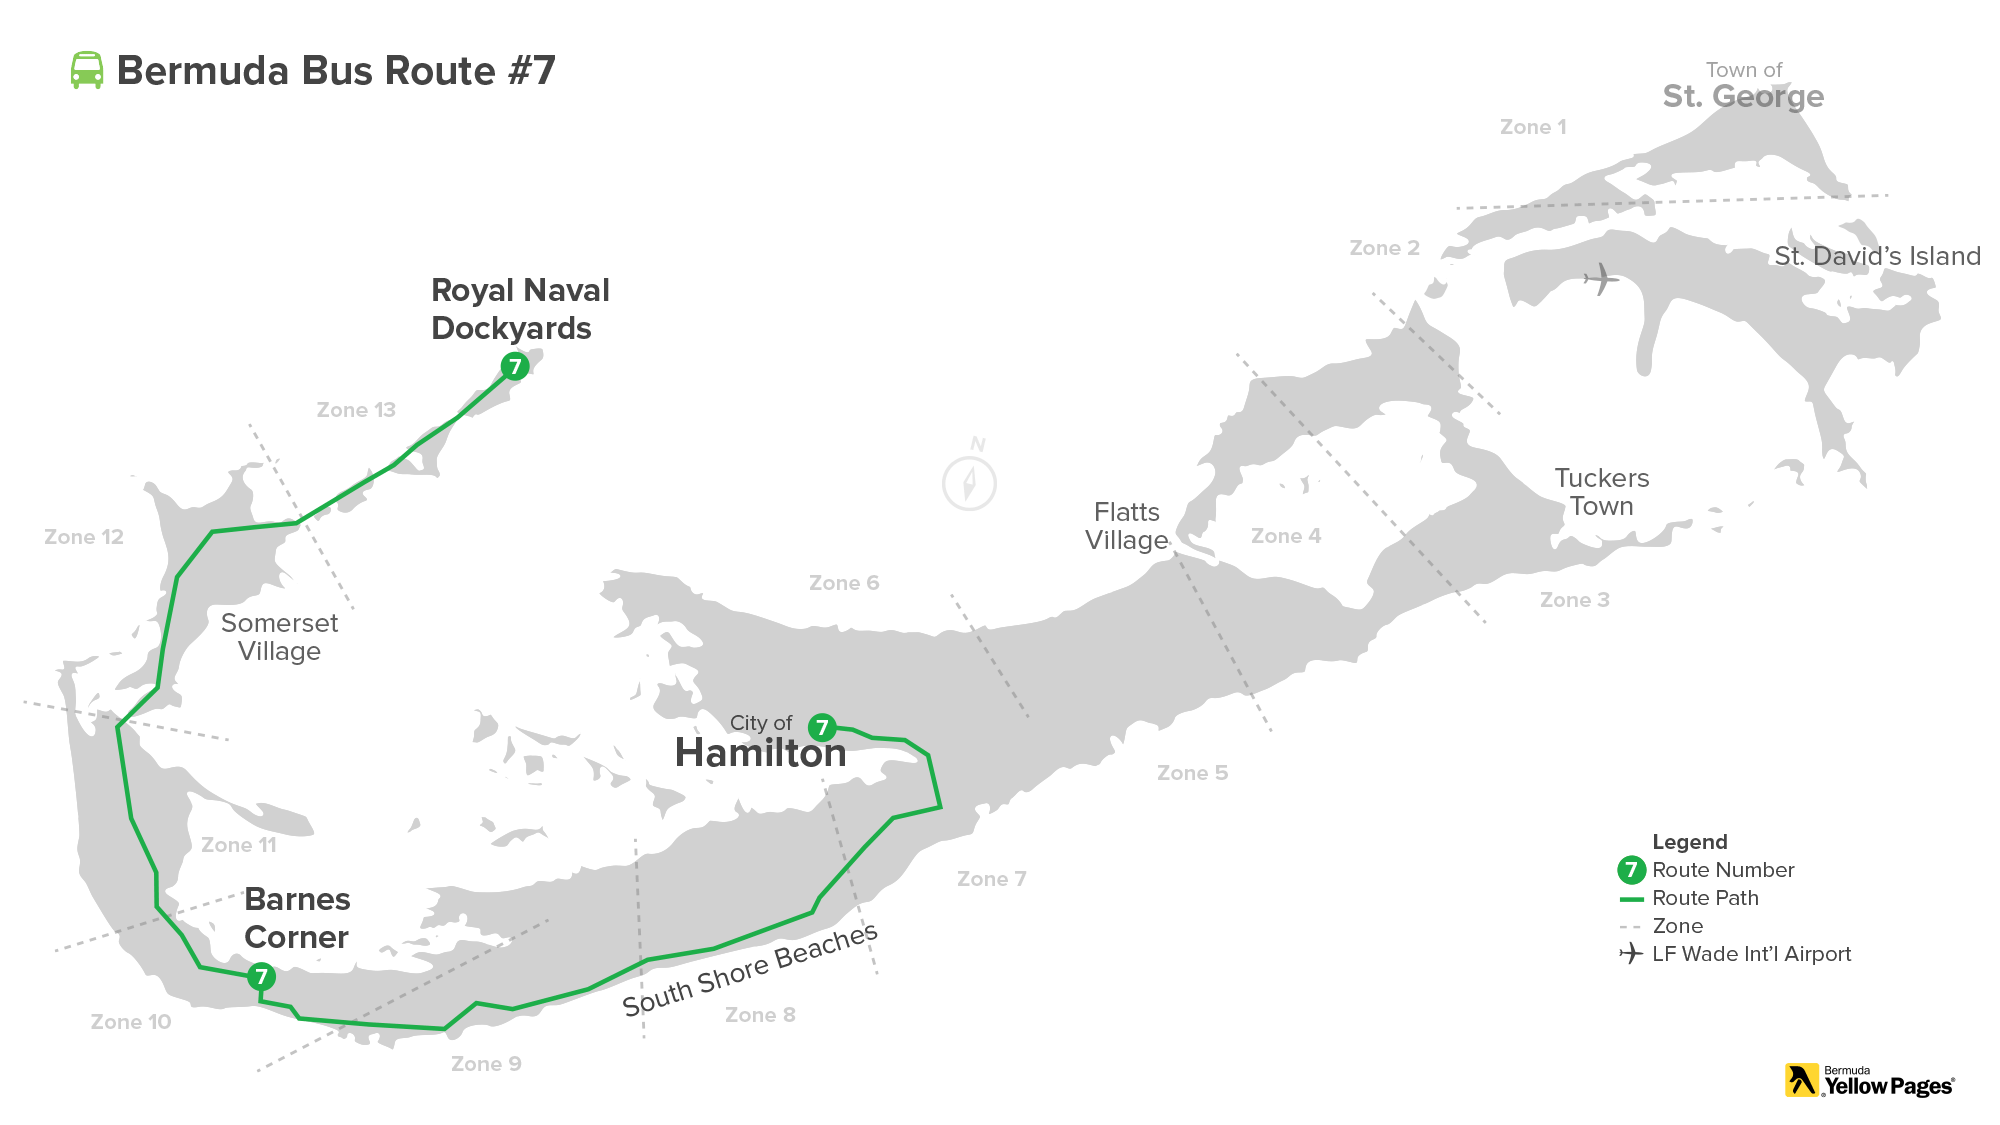 Bermuda Bus Route #7